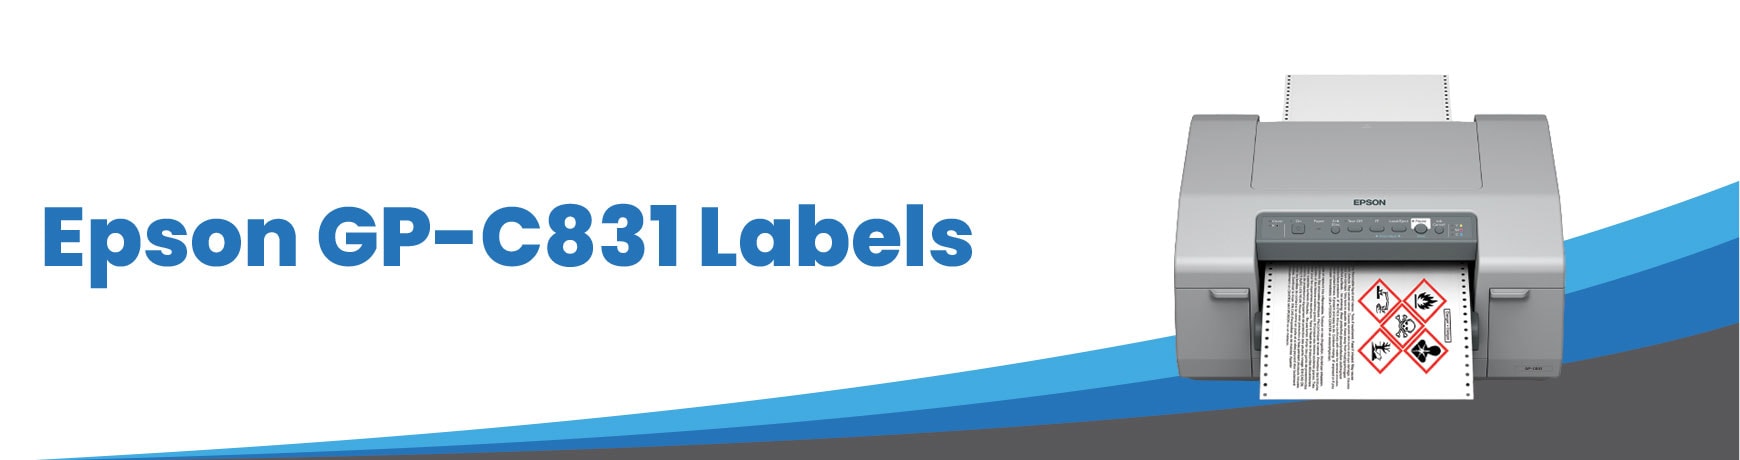 Epson GP-C831 Labels